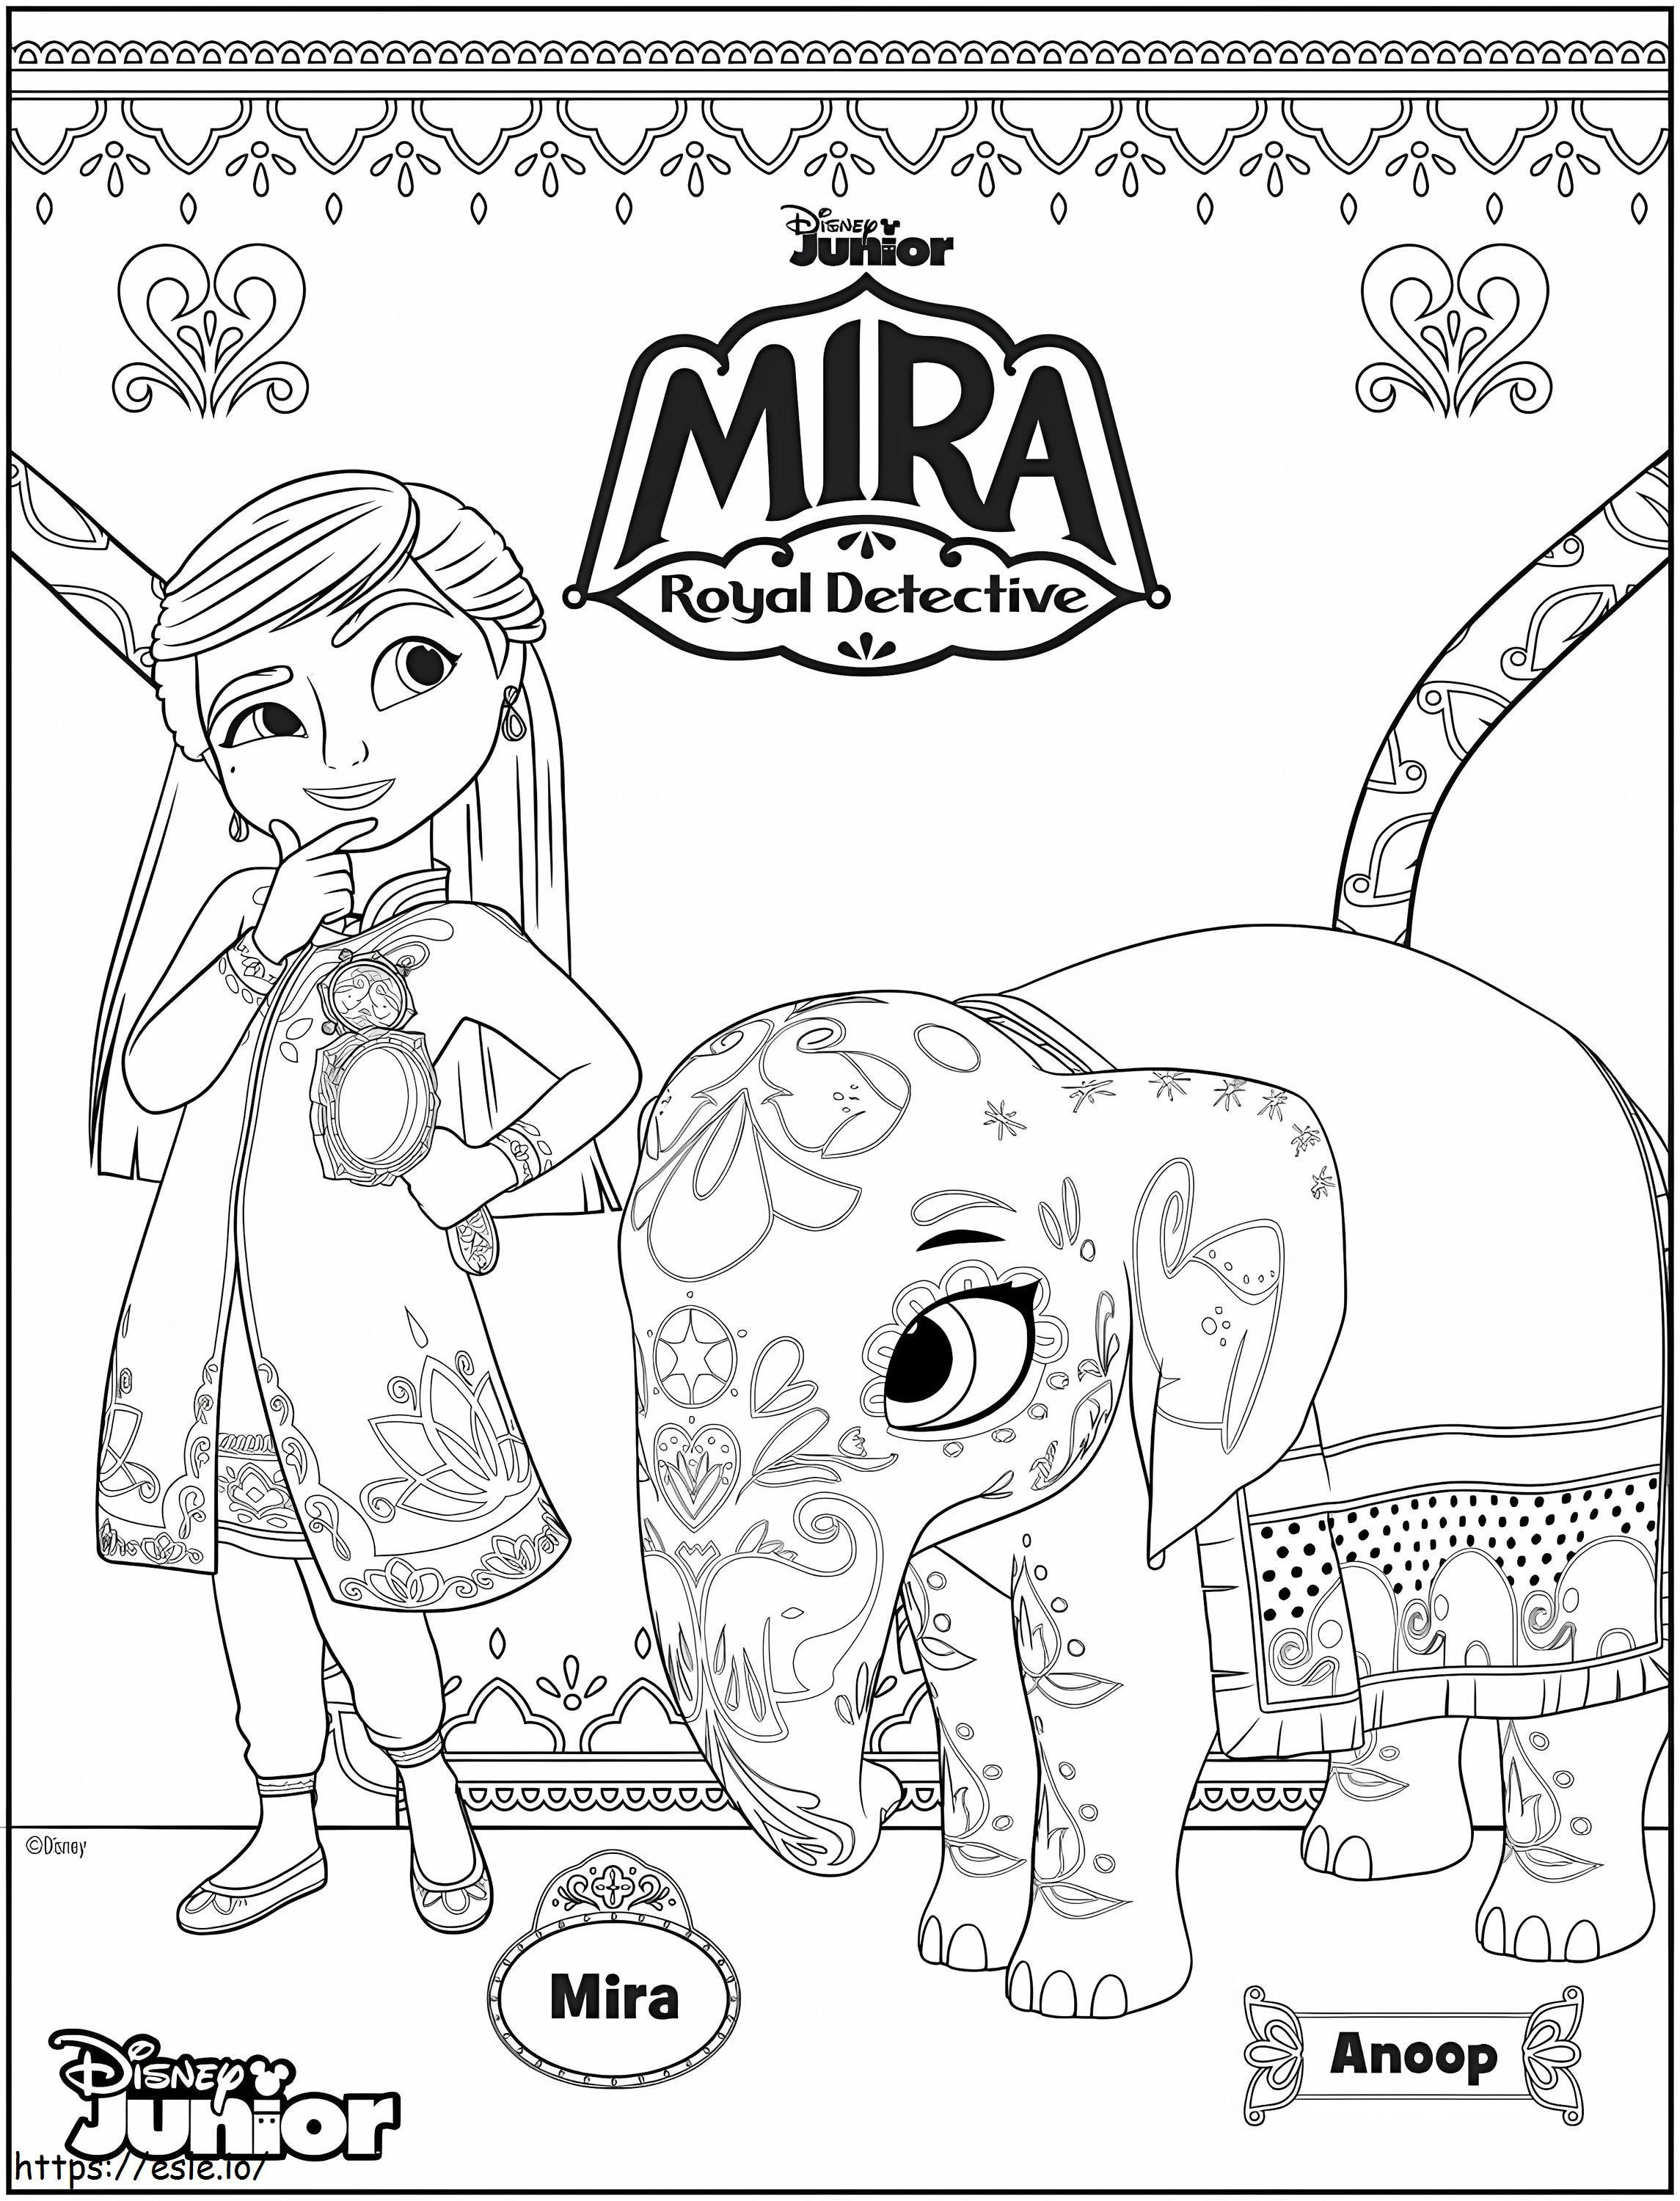 Mira en Anoop van Mira Royal Detective kleurplaat kleurplaat